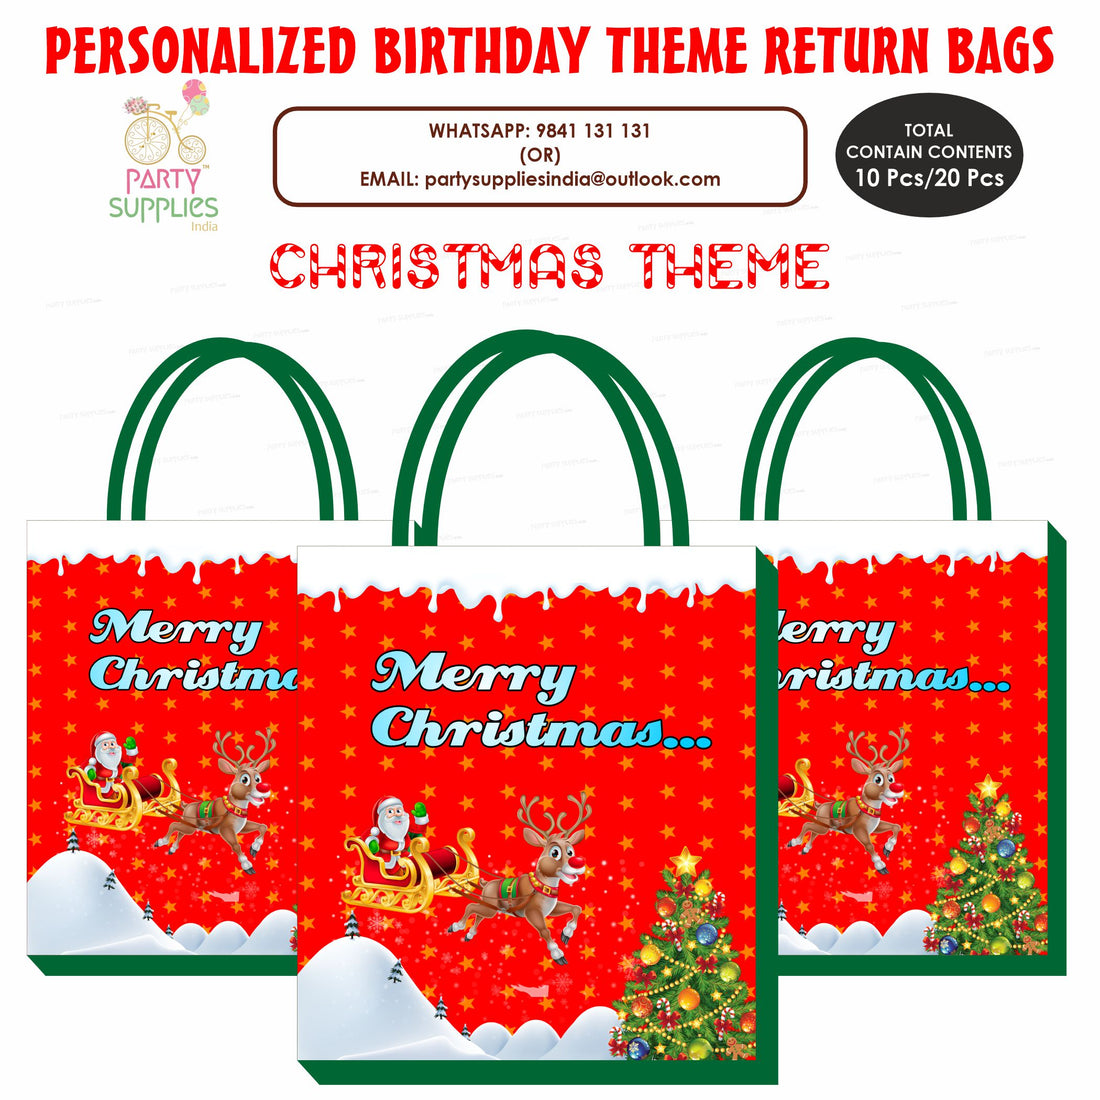 PSI Christmas Theme Return Gift Bag